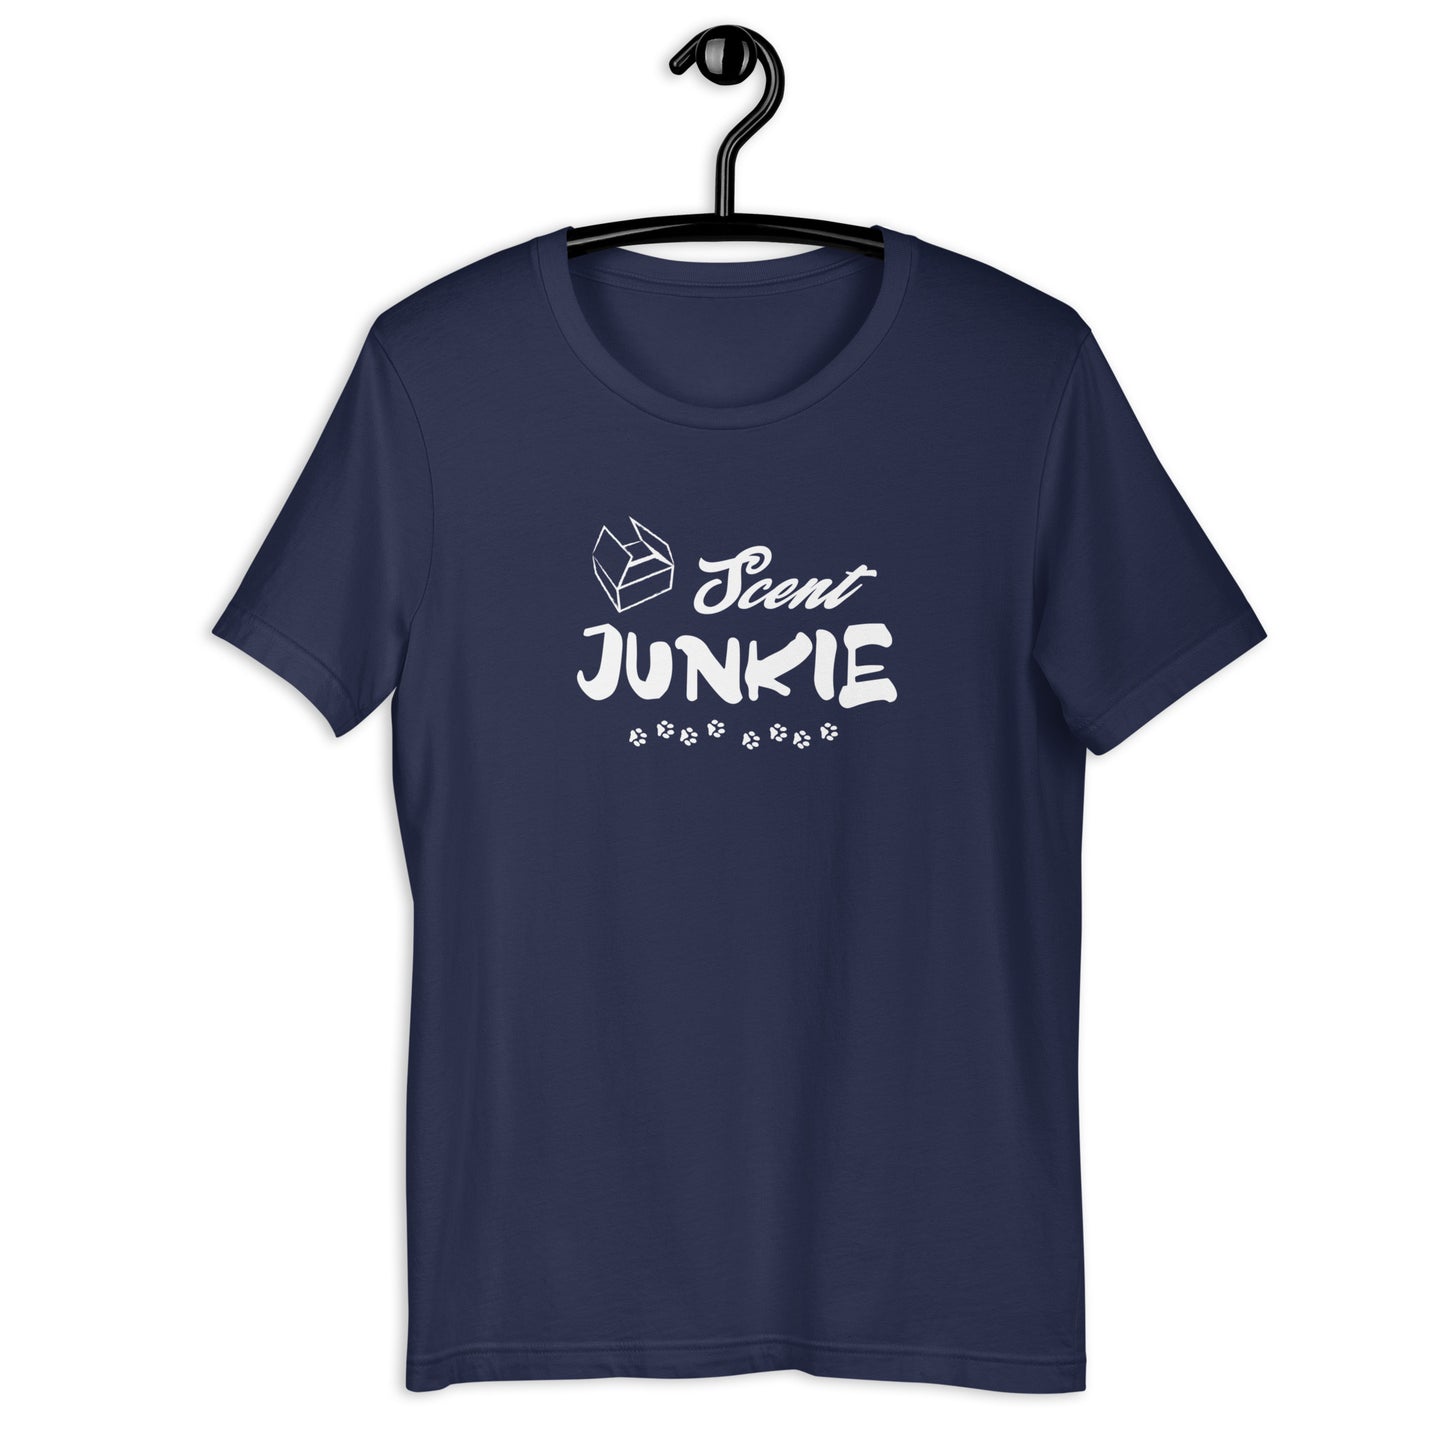 SCENT JUNKIE - Unisex t-shirt